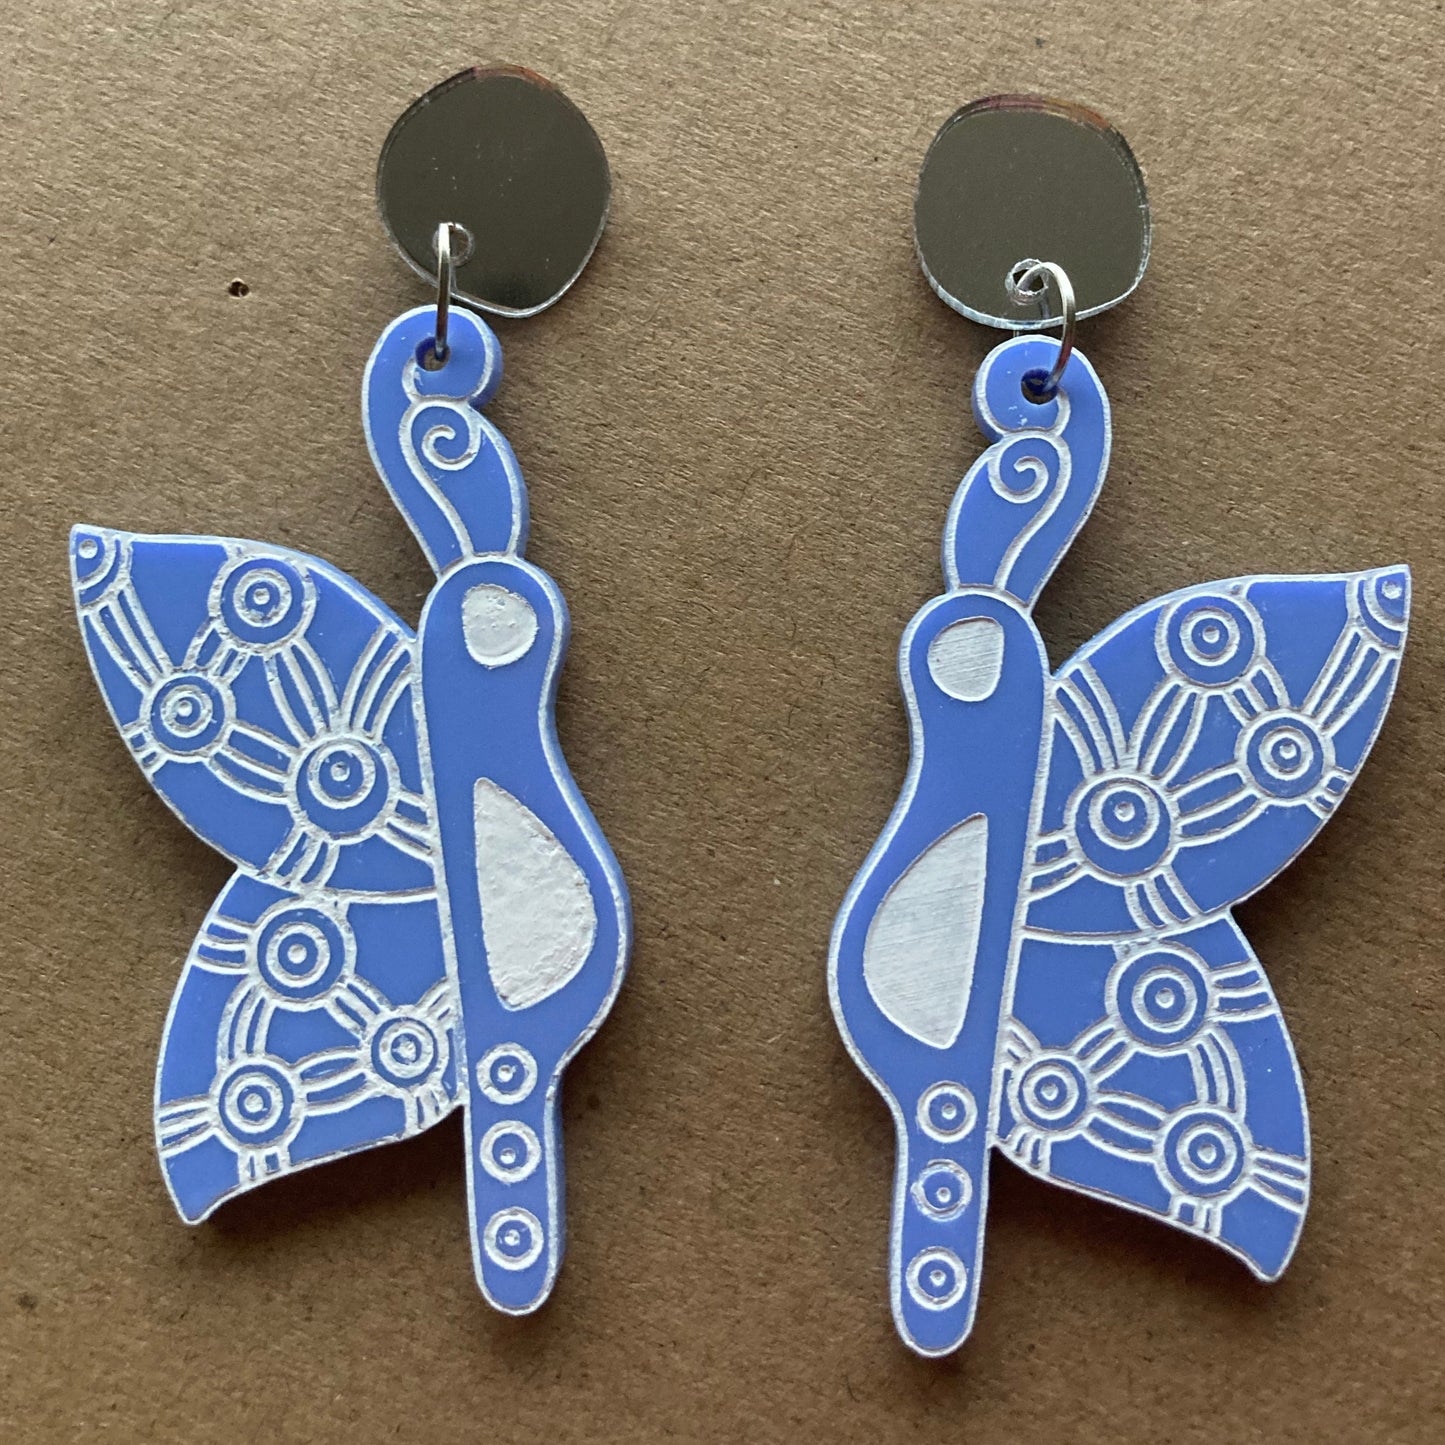 Bindi Bindi (Butterfly) earrings